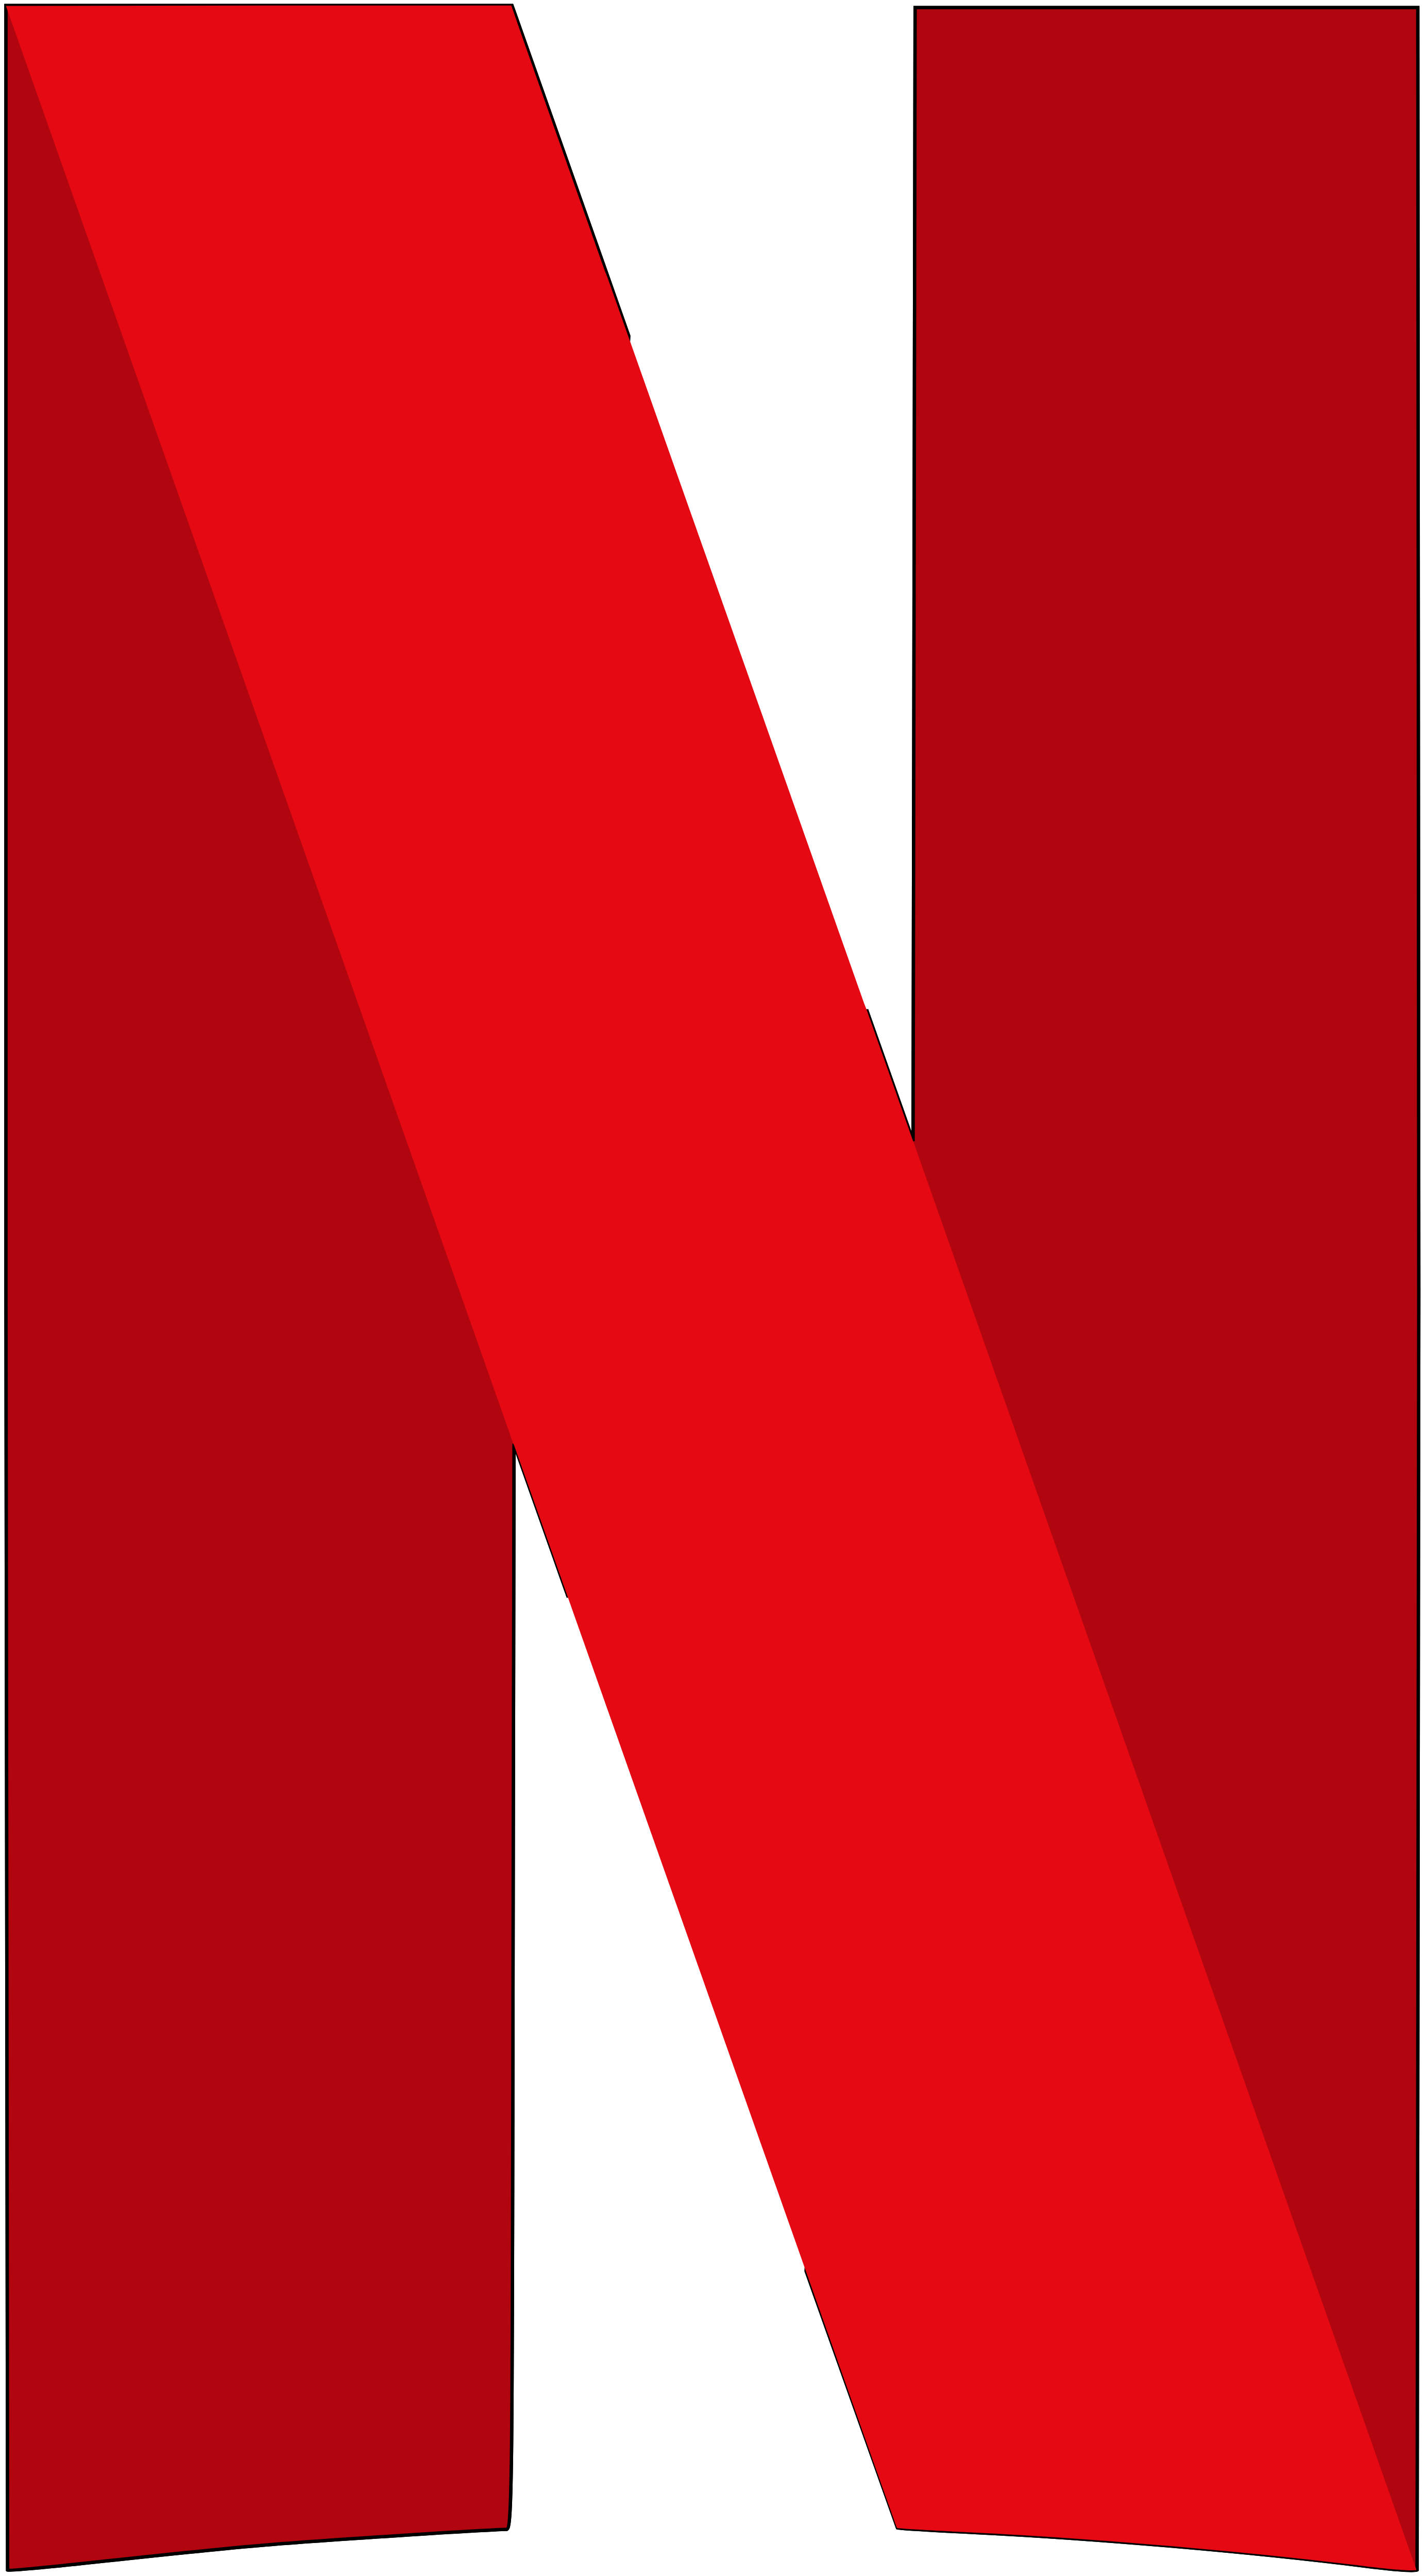 Nexflix Logo - Netflix